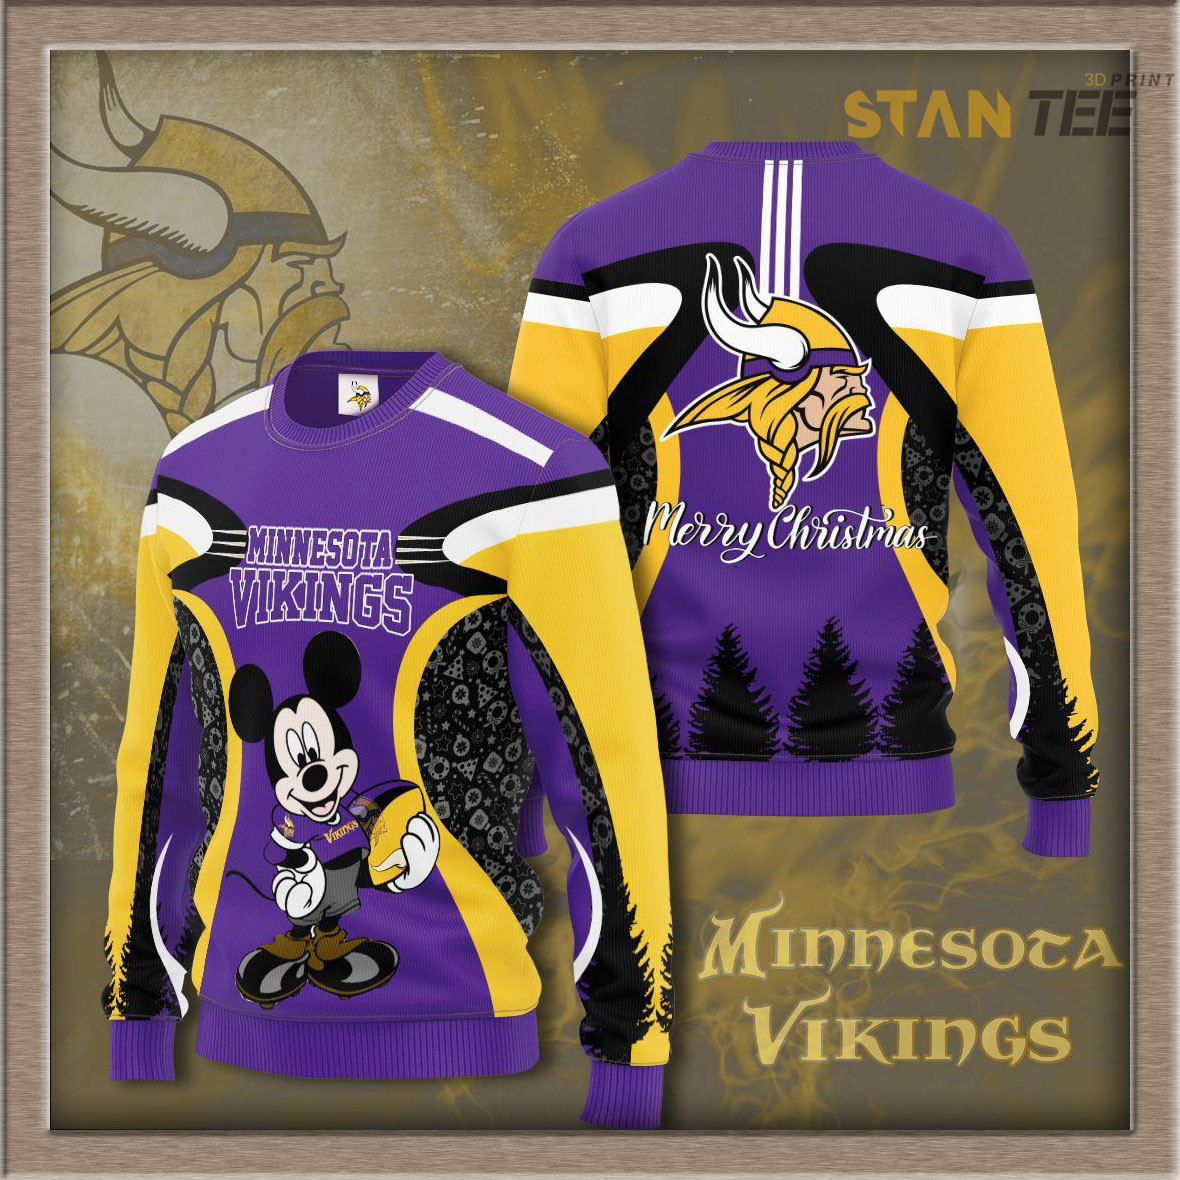 Minnesota Vikings sweatshirts